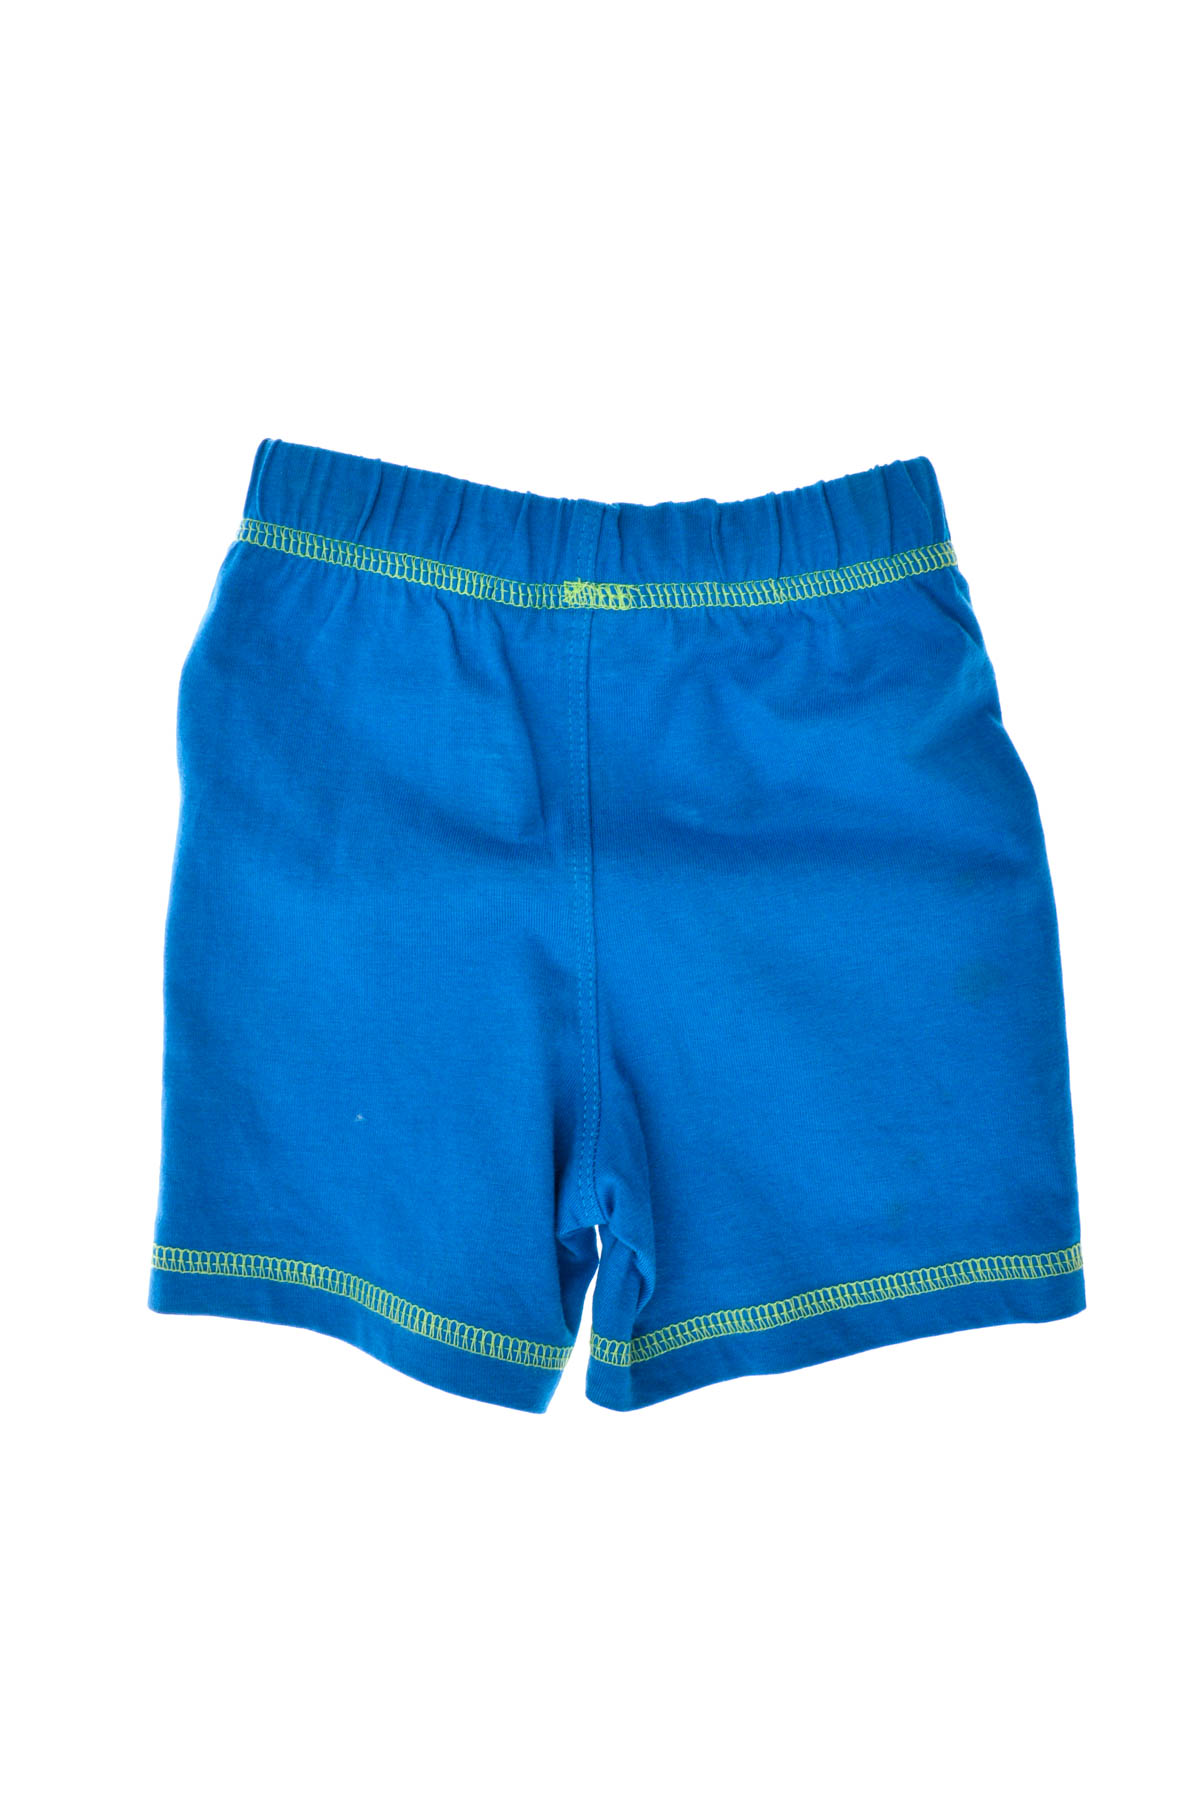 Pantaloni scurți pentru băiat - Liegelind - 1